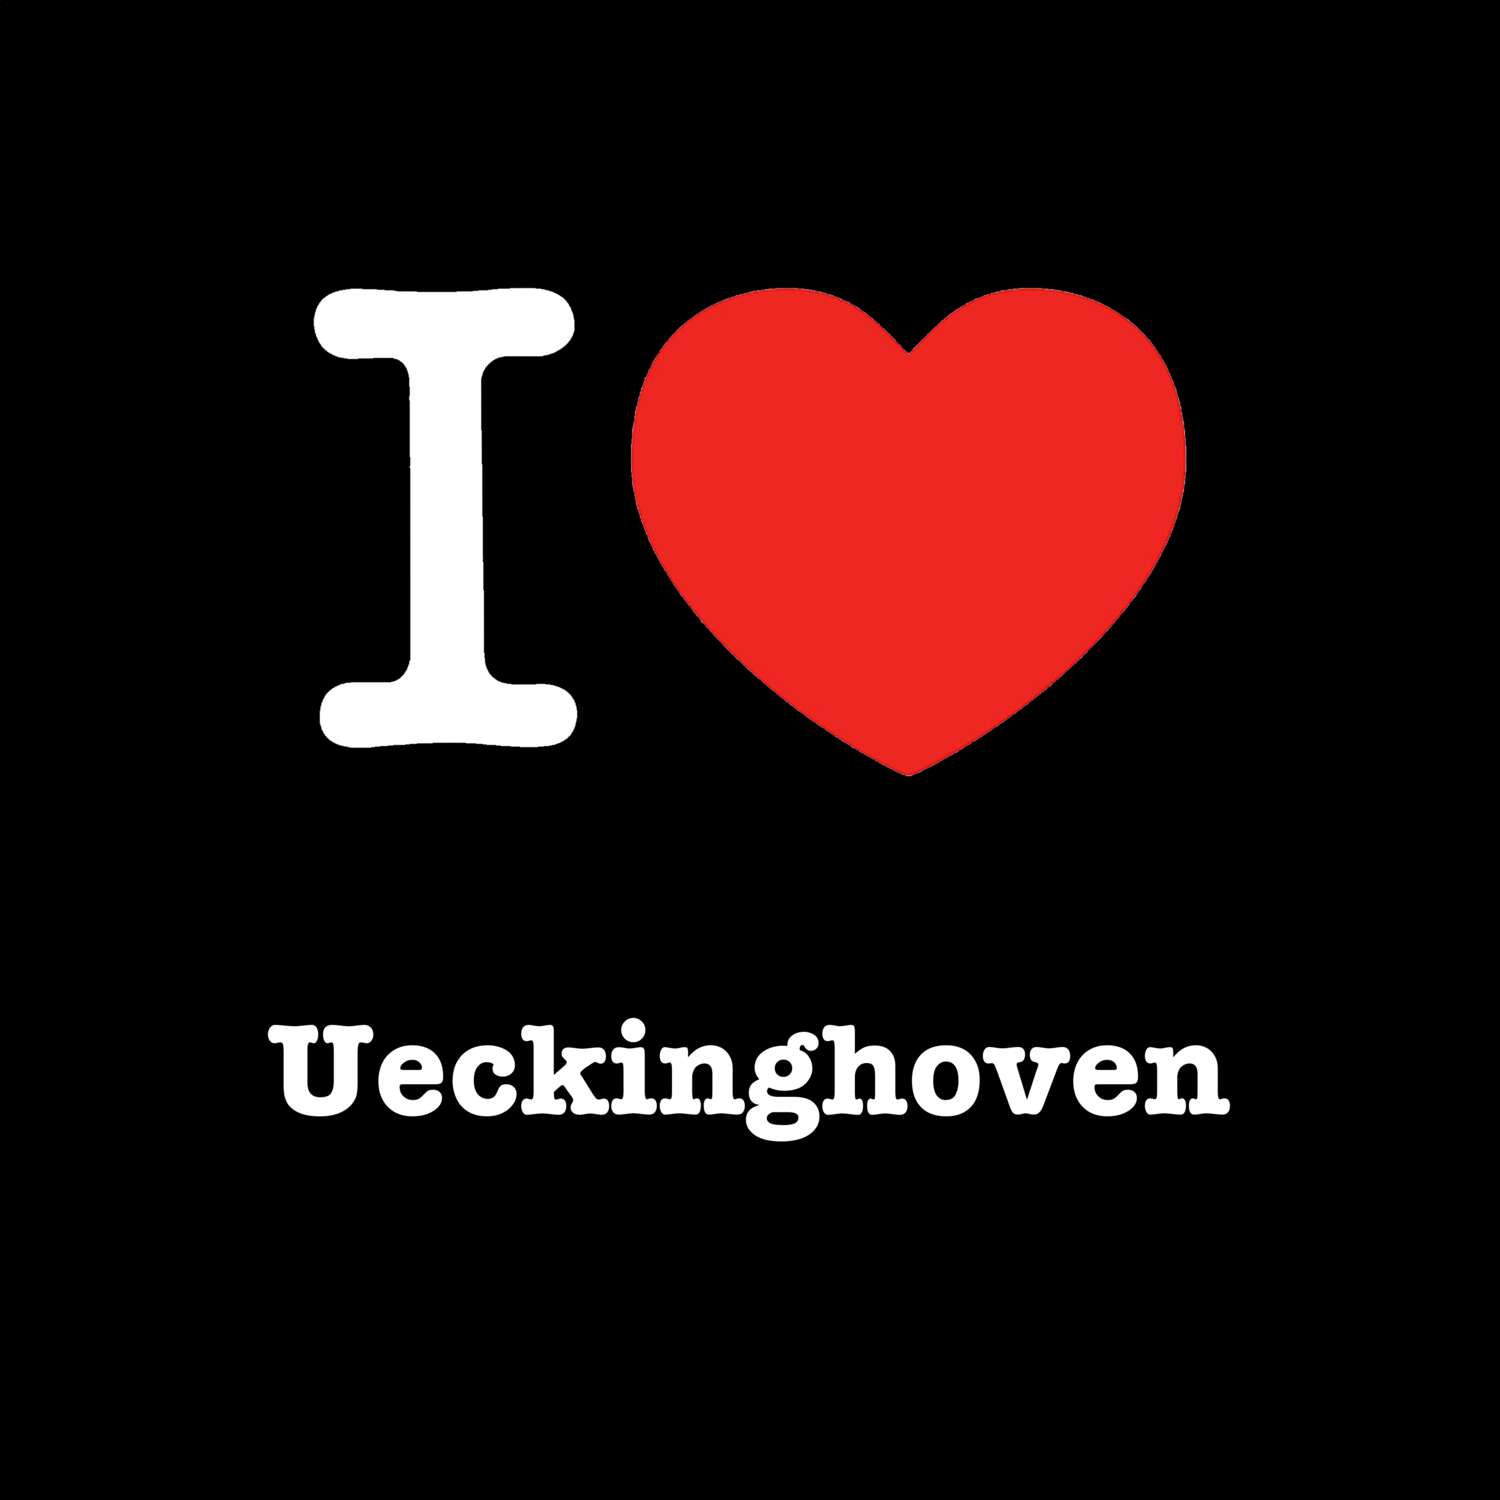 Ueckinghoven T-Shirt »I love«